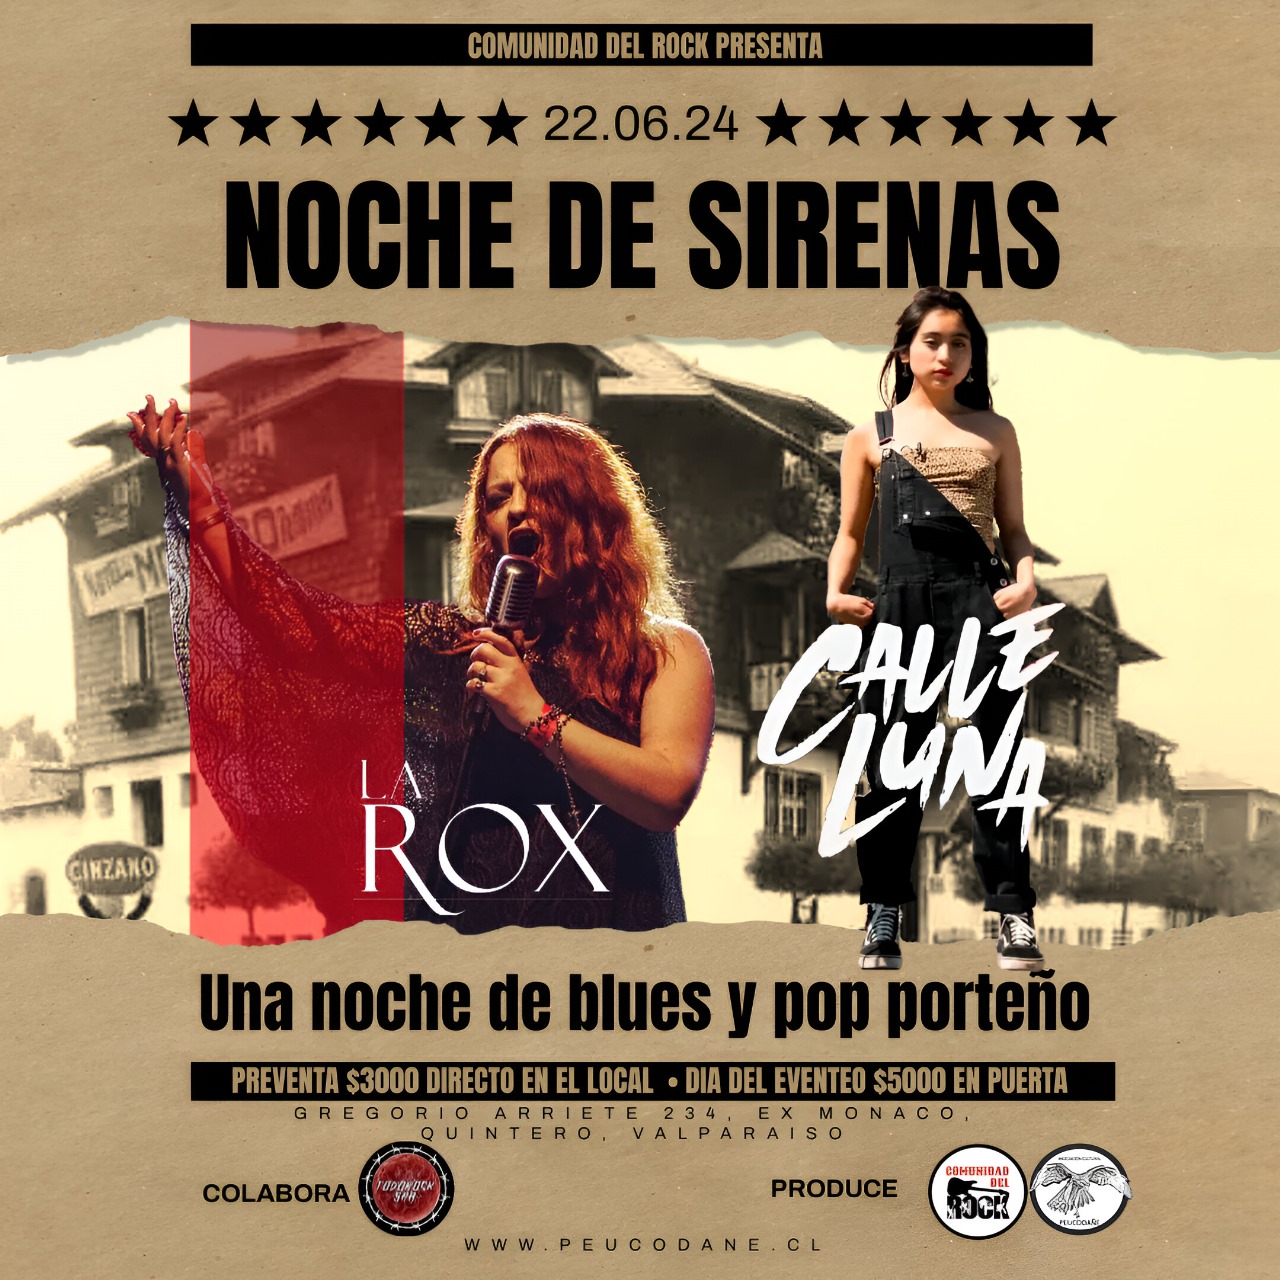 Noche de sirenas blues pop porteño en Quintero